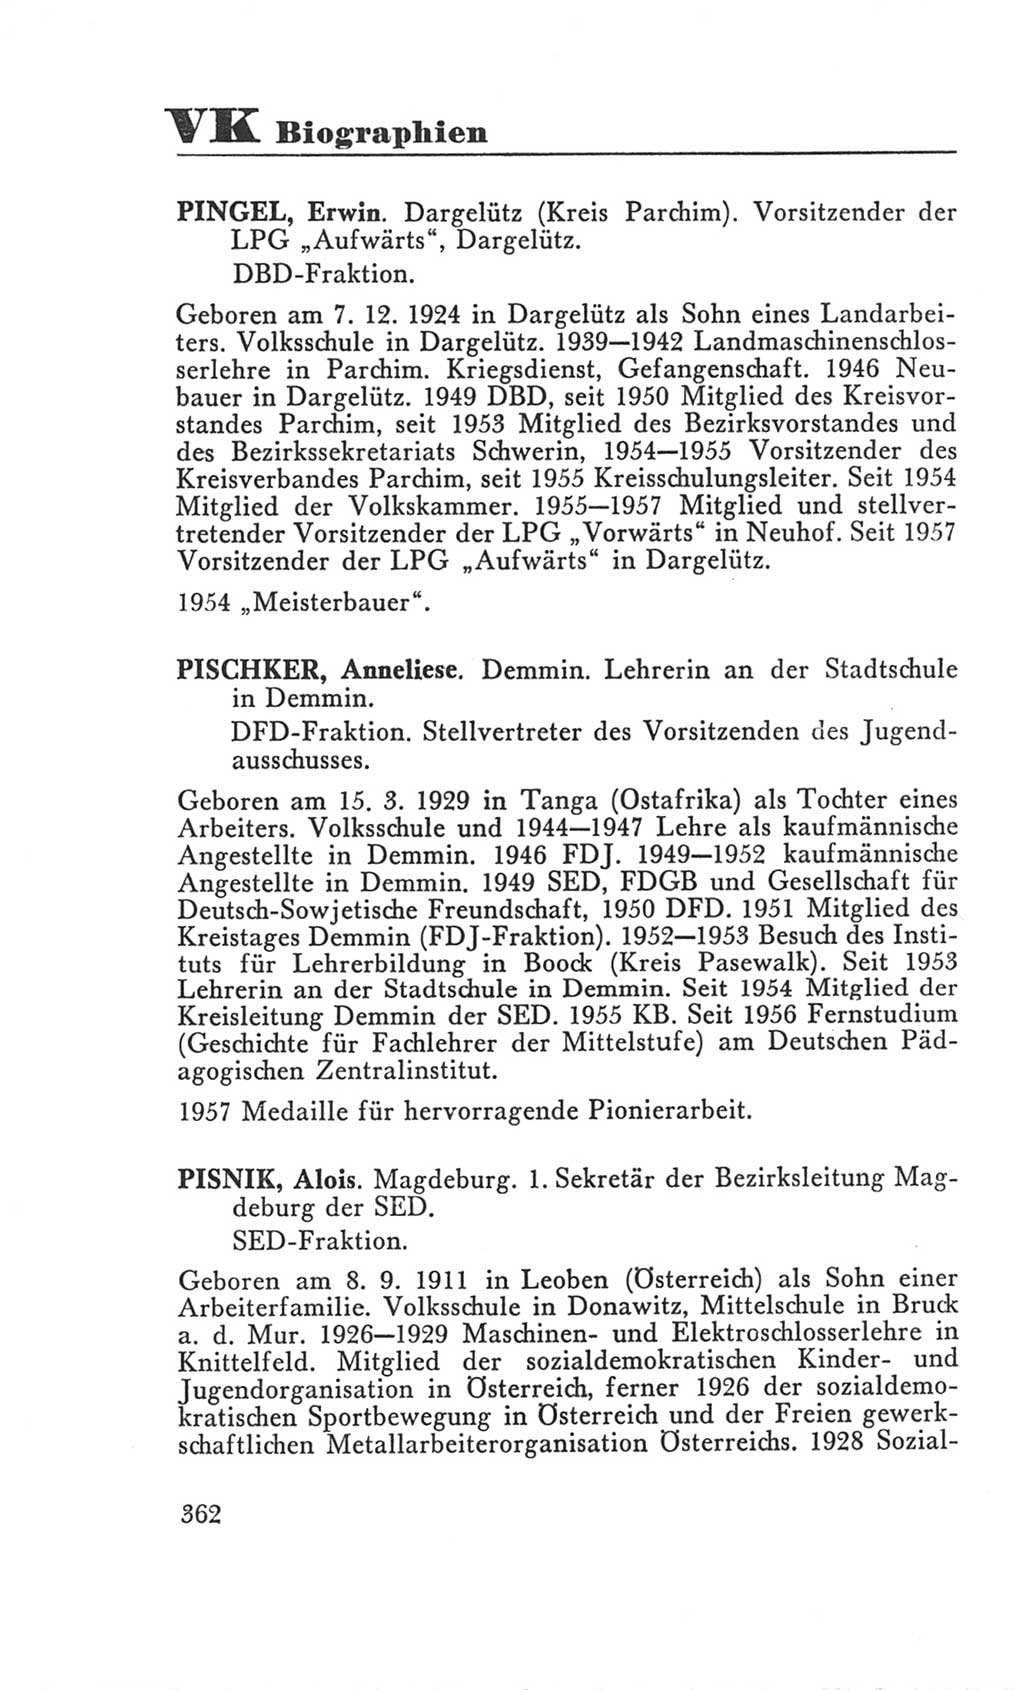 Handbuch der Volkskammer (VK) der Deutschen Demokratischen Republik (DDR), 3. Wahlperiode 1958-1963, Seite 362 (Hdb. VK. DDR 3. WP. 1958-1963, S. 362)